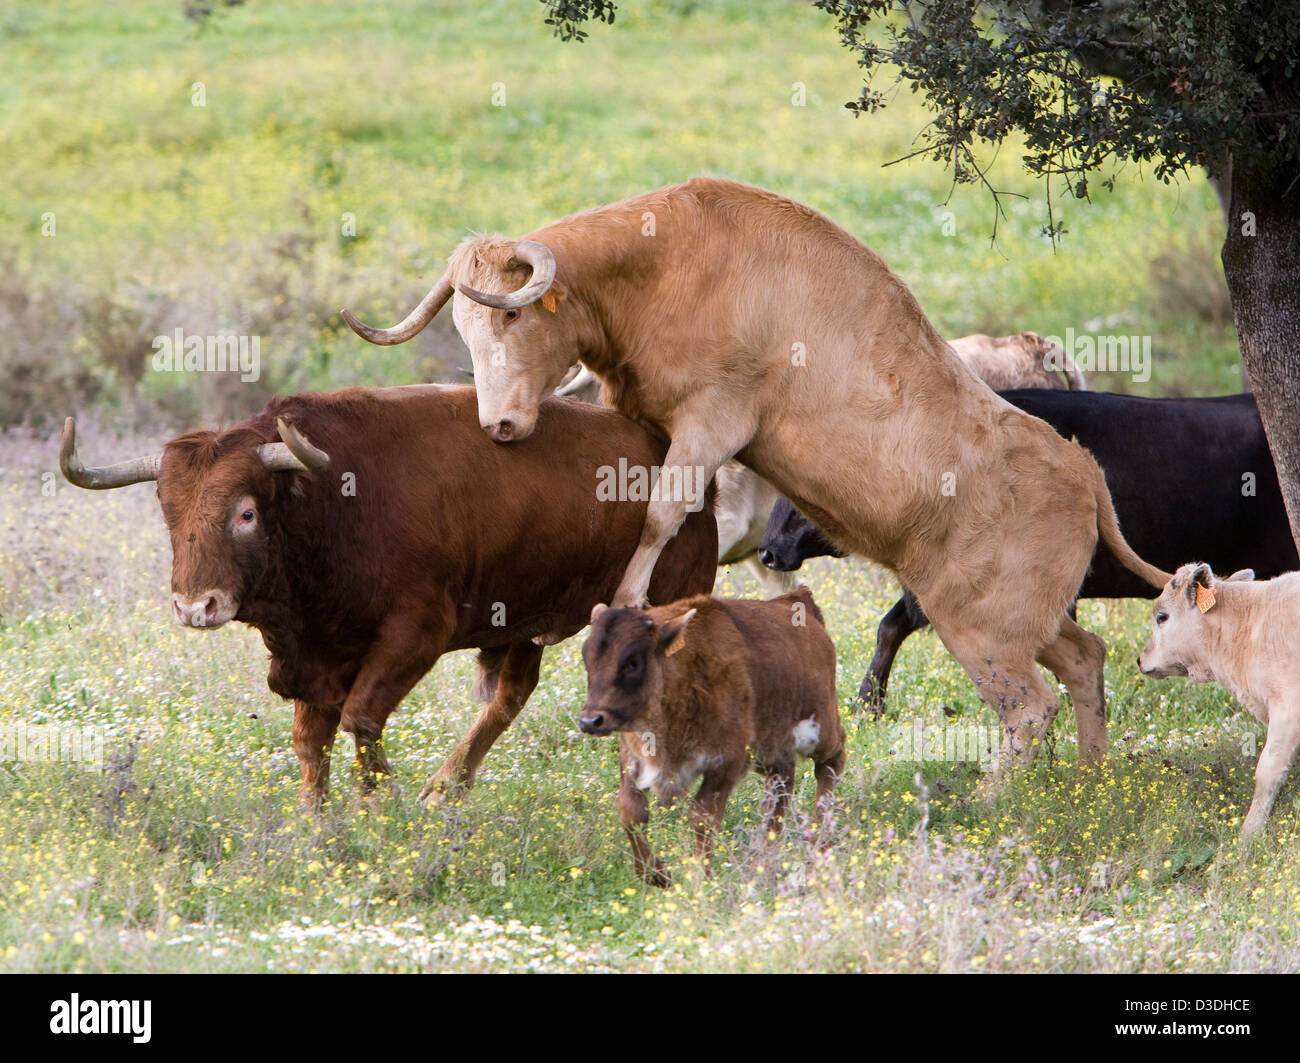 EL CASTILLO DE LAS GUARDAS, Sevilla, Spanien, 24. Februar 2008: eine Kuh steigt einen Stier auf der Ganaderia Domecq.  Diese 7.000 Hektar großen Stier Zucht Ranch, die ältesten in Spanien ist im Besitz von Domecq.  Er sucht für die künstlerische Leistung in die Bulls er züchtet Bullen für den Ring. Stockfoto